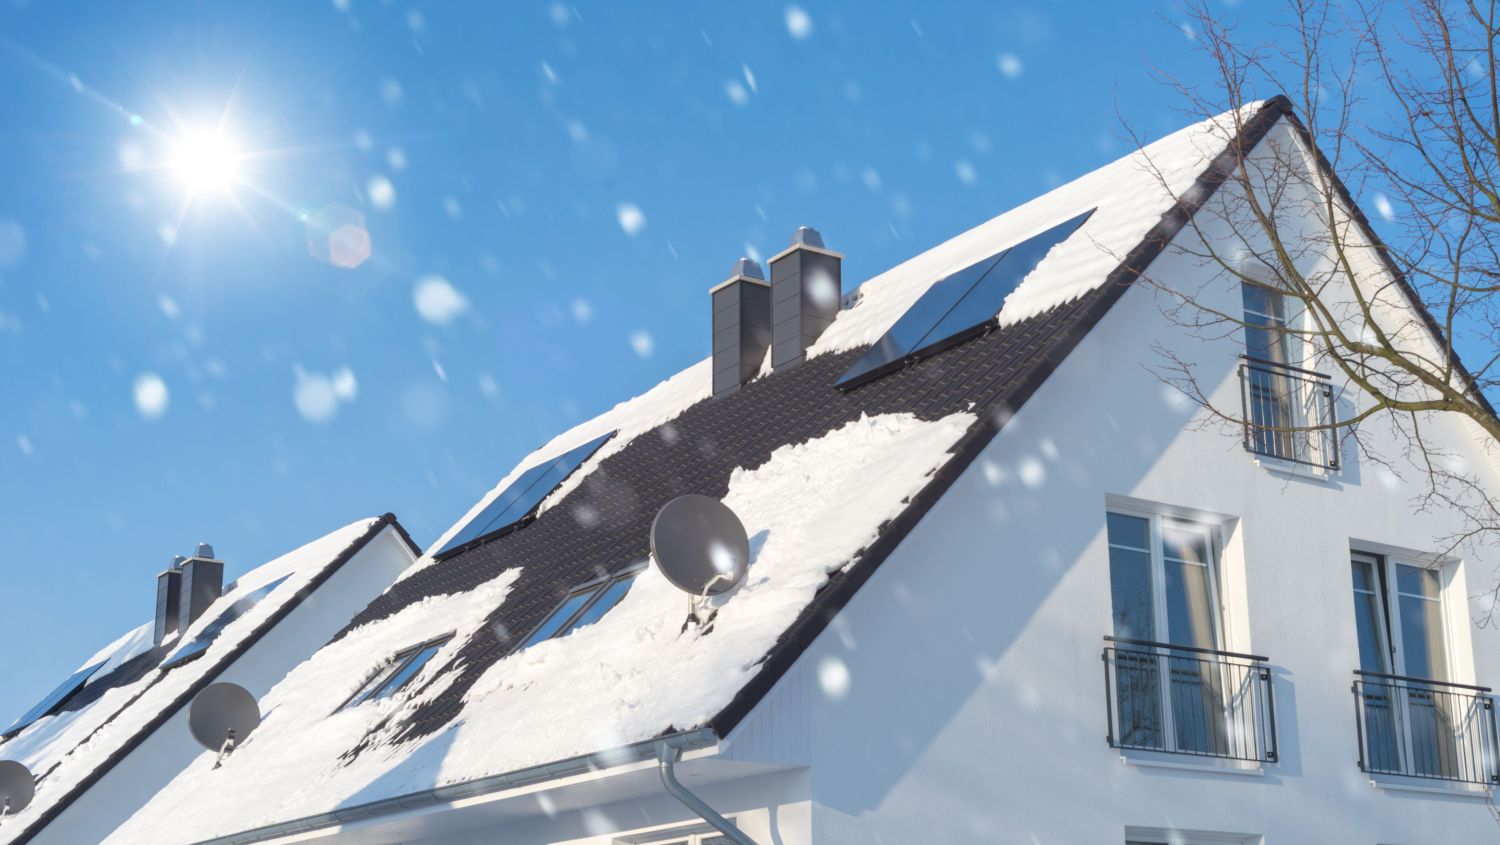 Schnee fällt auf Hausdach mit PV-Anlage